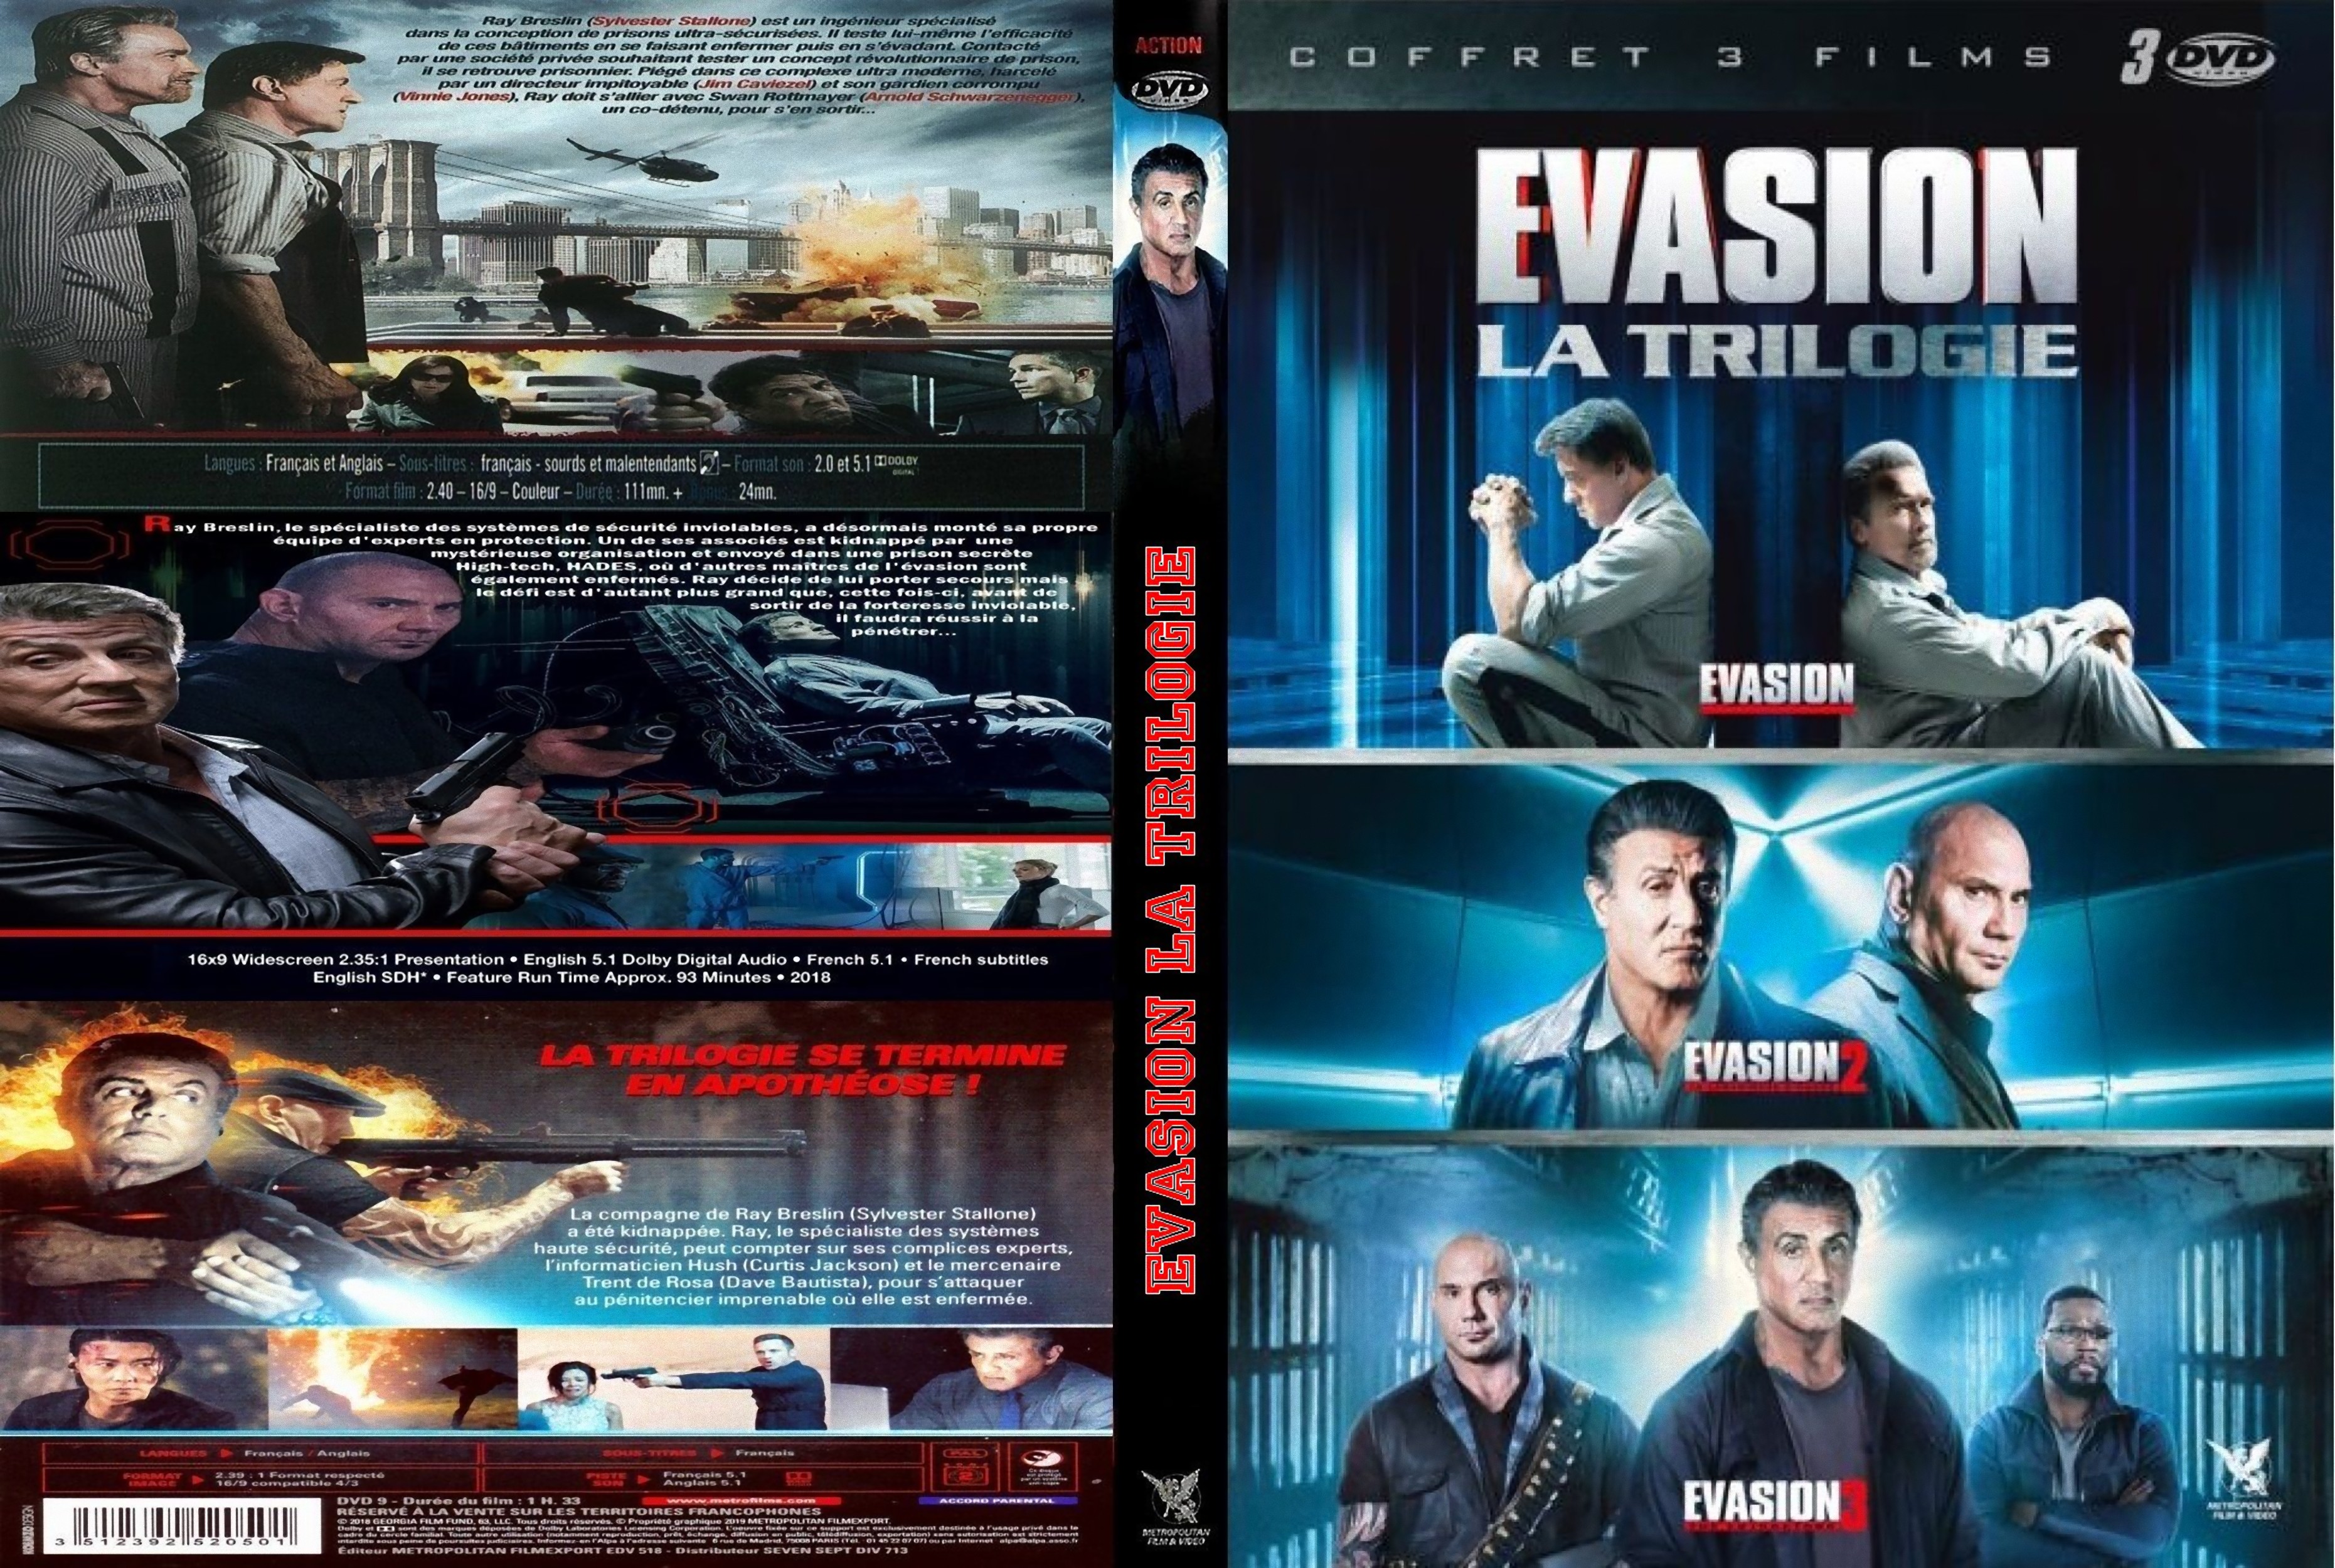 Jaquette Dvd De Evasion 1 2 3 Custom Cinéma Passion